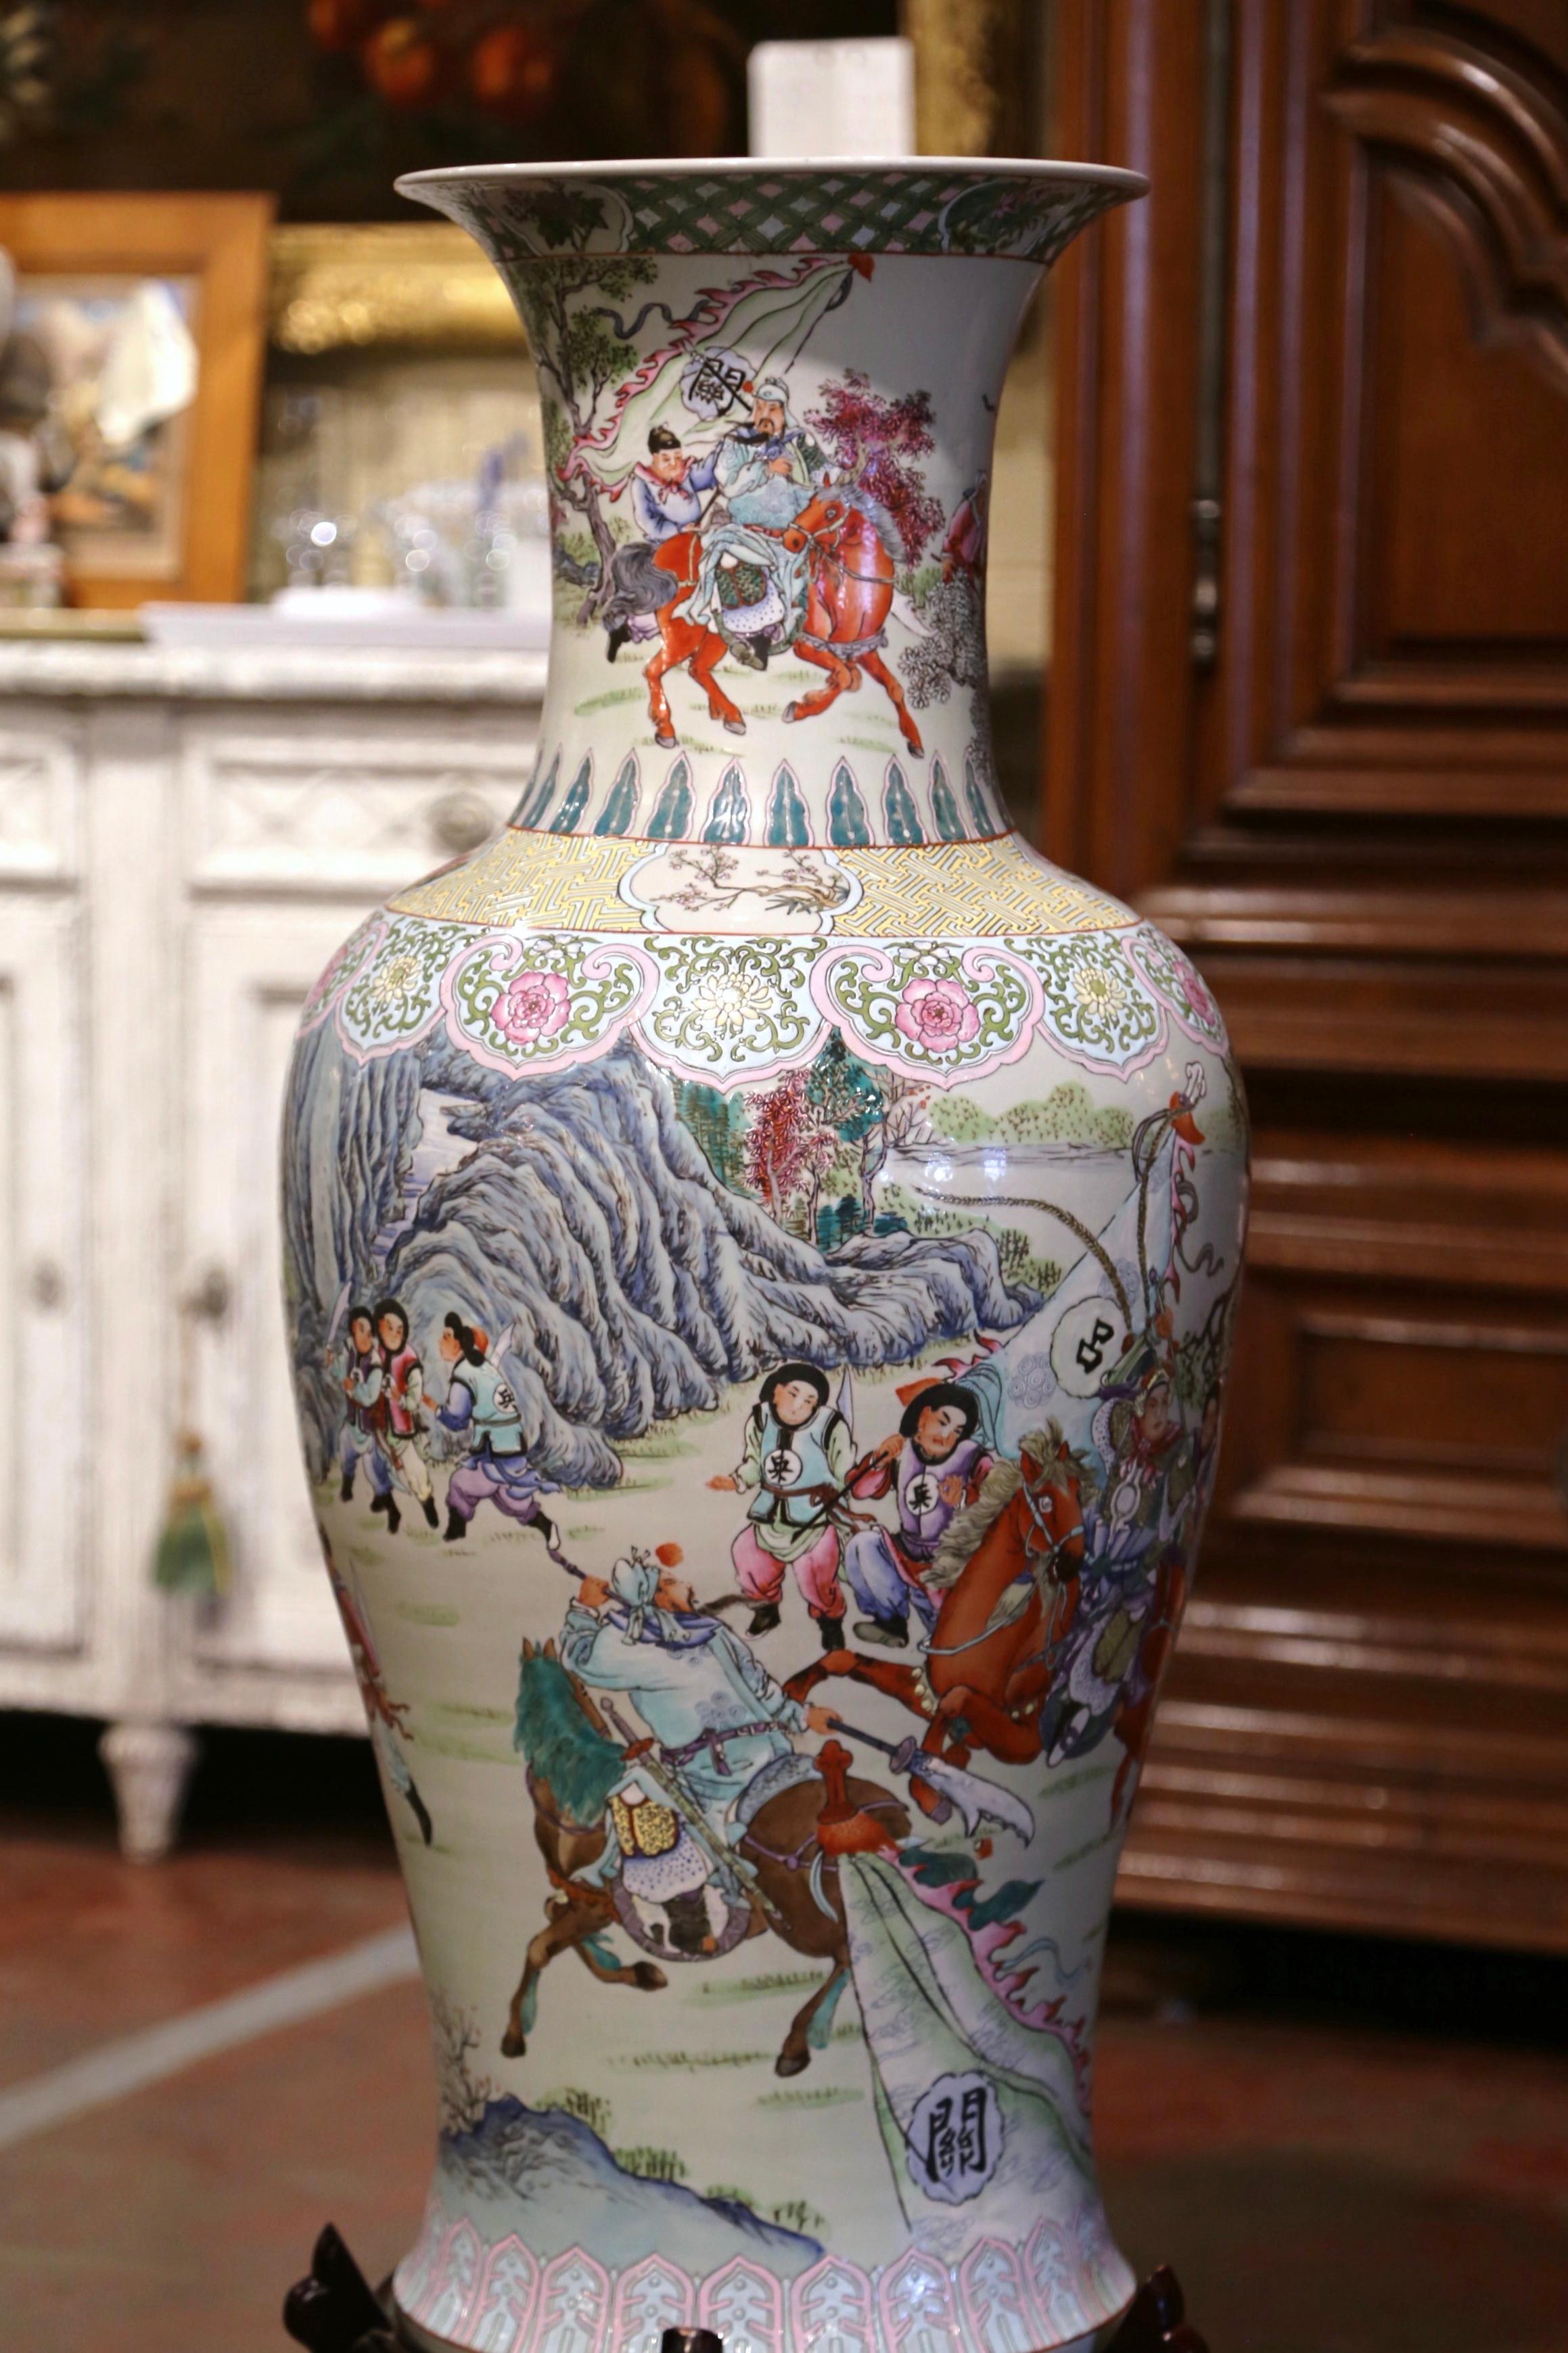 Die hohe Porzellanvase wurde um 1950 in China hergestellt und steht auf einem geschnitzten Holzsockel. Sie hat eine runde Form und einen eleganten langen und breiten Hals. Die farbenfrohe antike Urne ist mit handgemalten figuralen Motiven mit